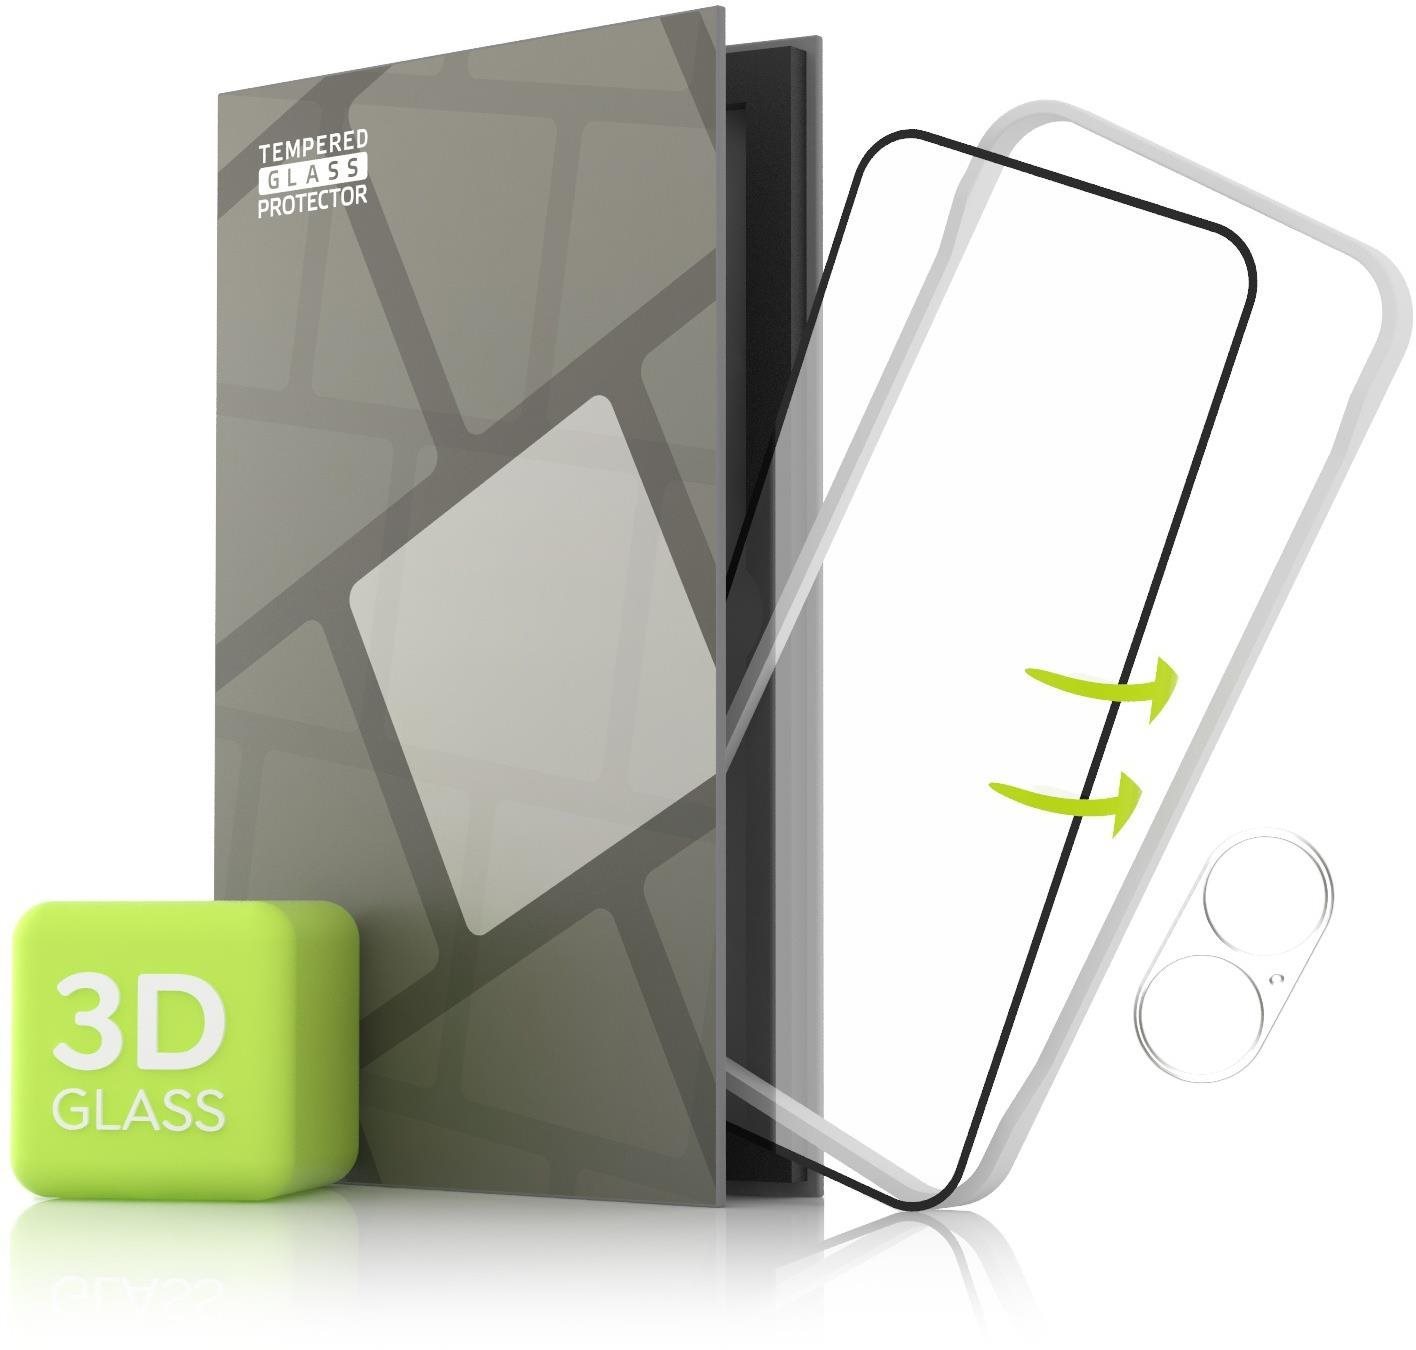 Tempered Glass Protector Huawei P50 Pro 3D üvegfólia - keret, 3D Glass + kamera védő fólia + felhelyező keret